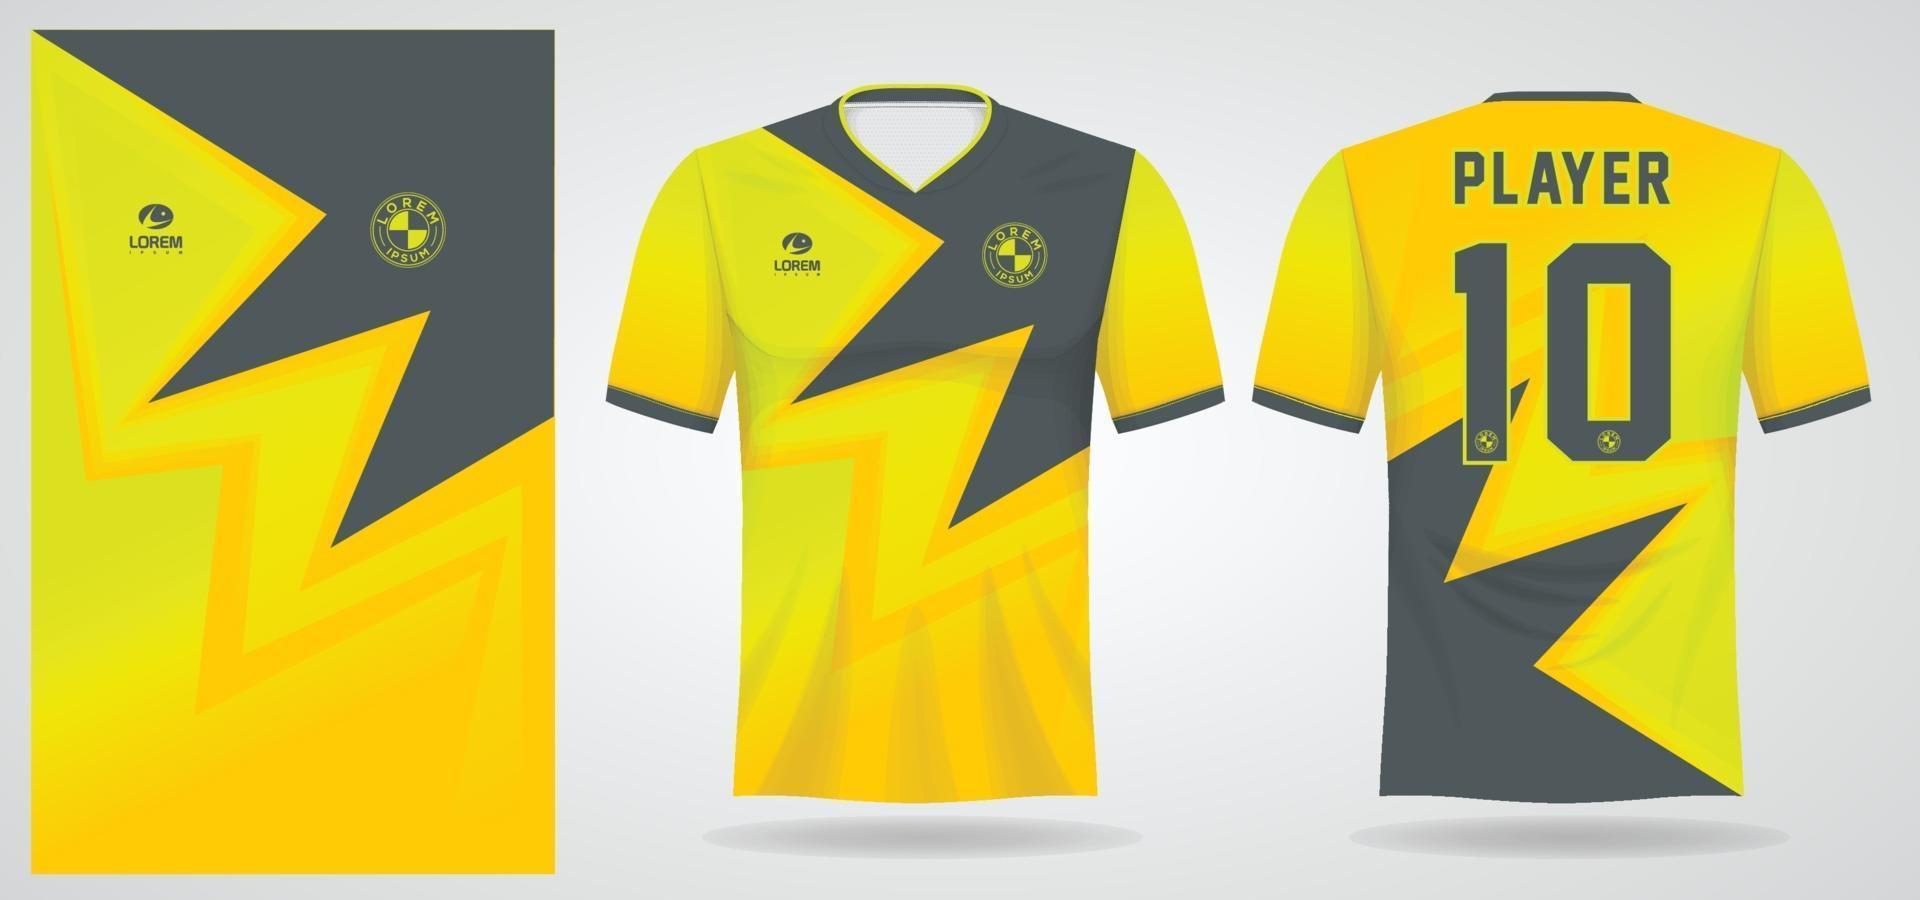 geel zwart sportshirt sjabloon voor teamuniformen en voetbalt-shirtontwerp vector